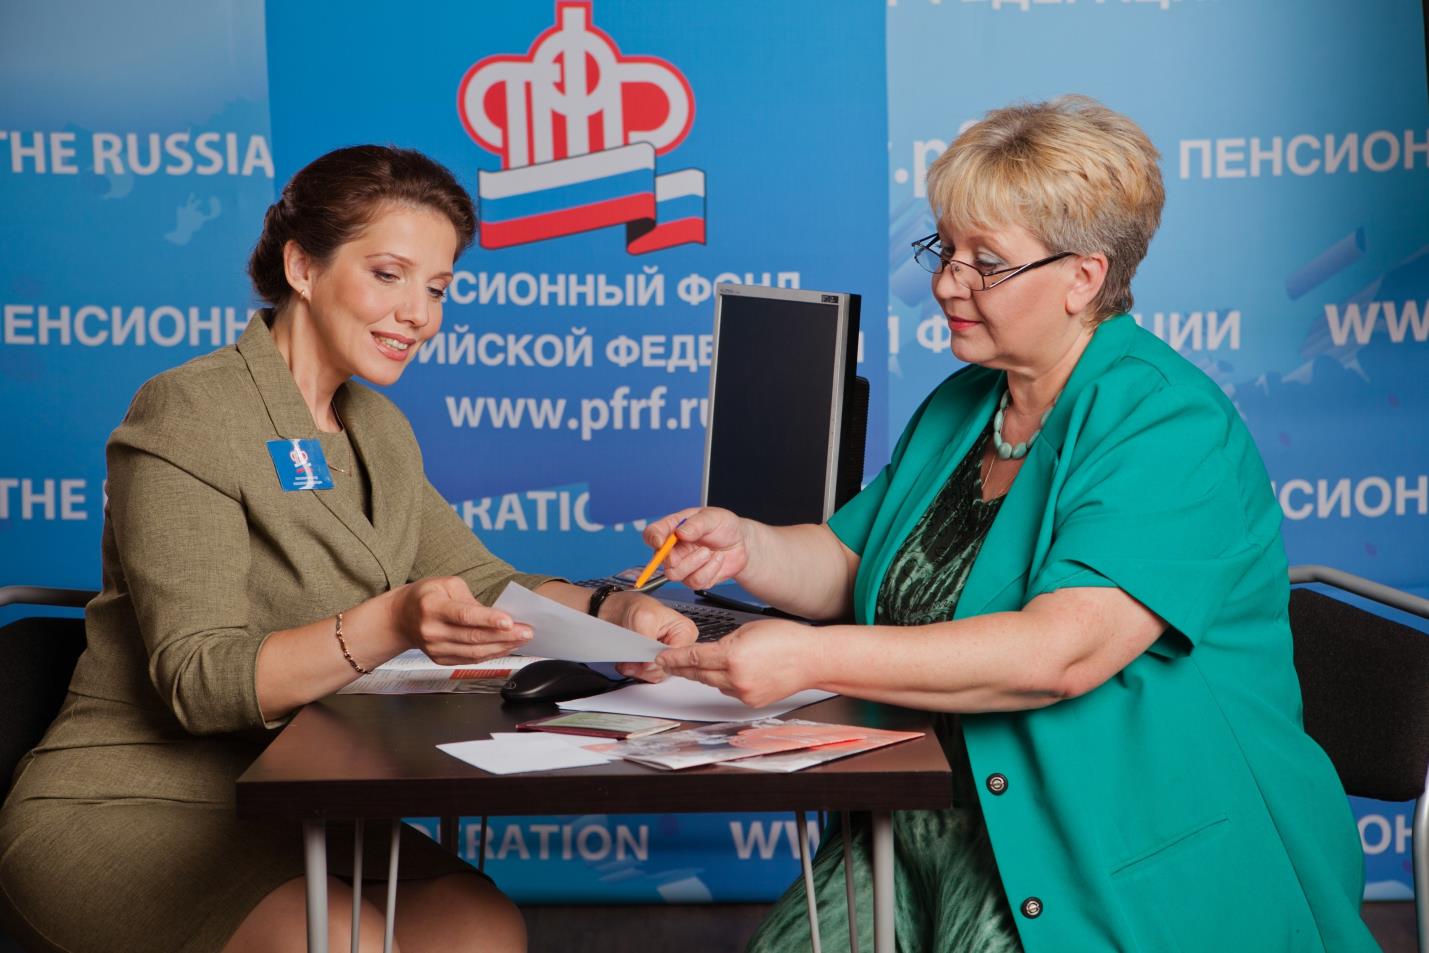 22 тыс. татарстанцев получат право на предпенсионные льготы с начала года